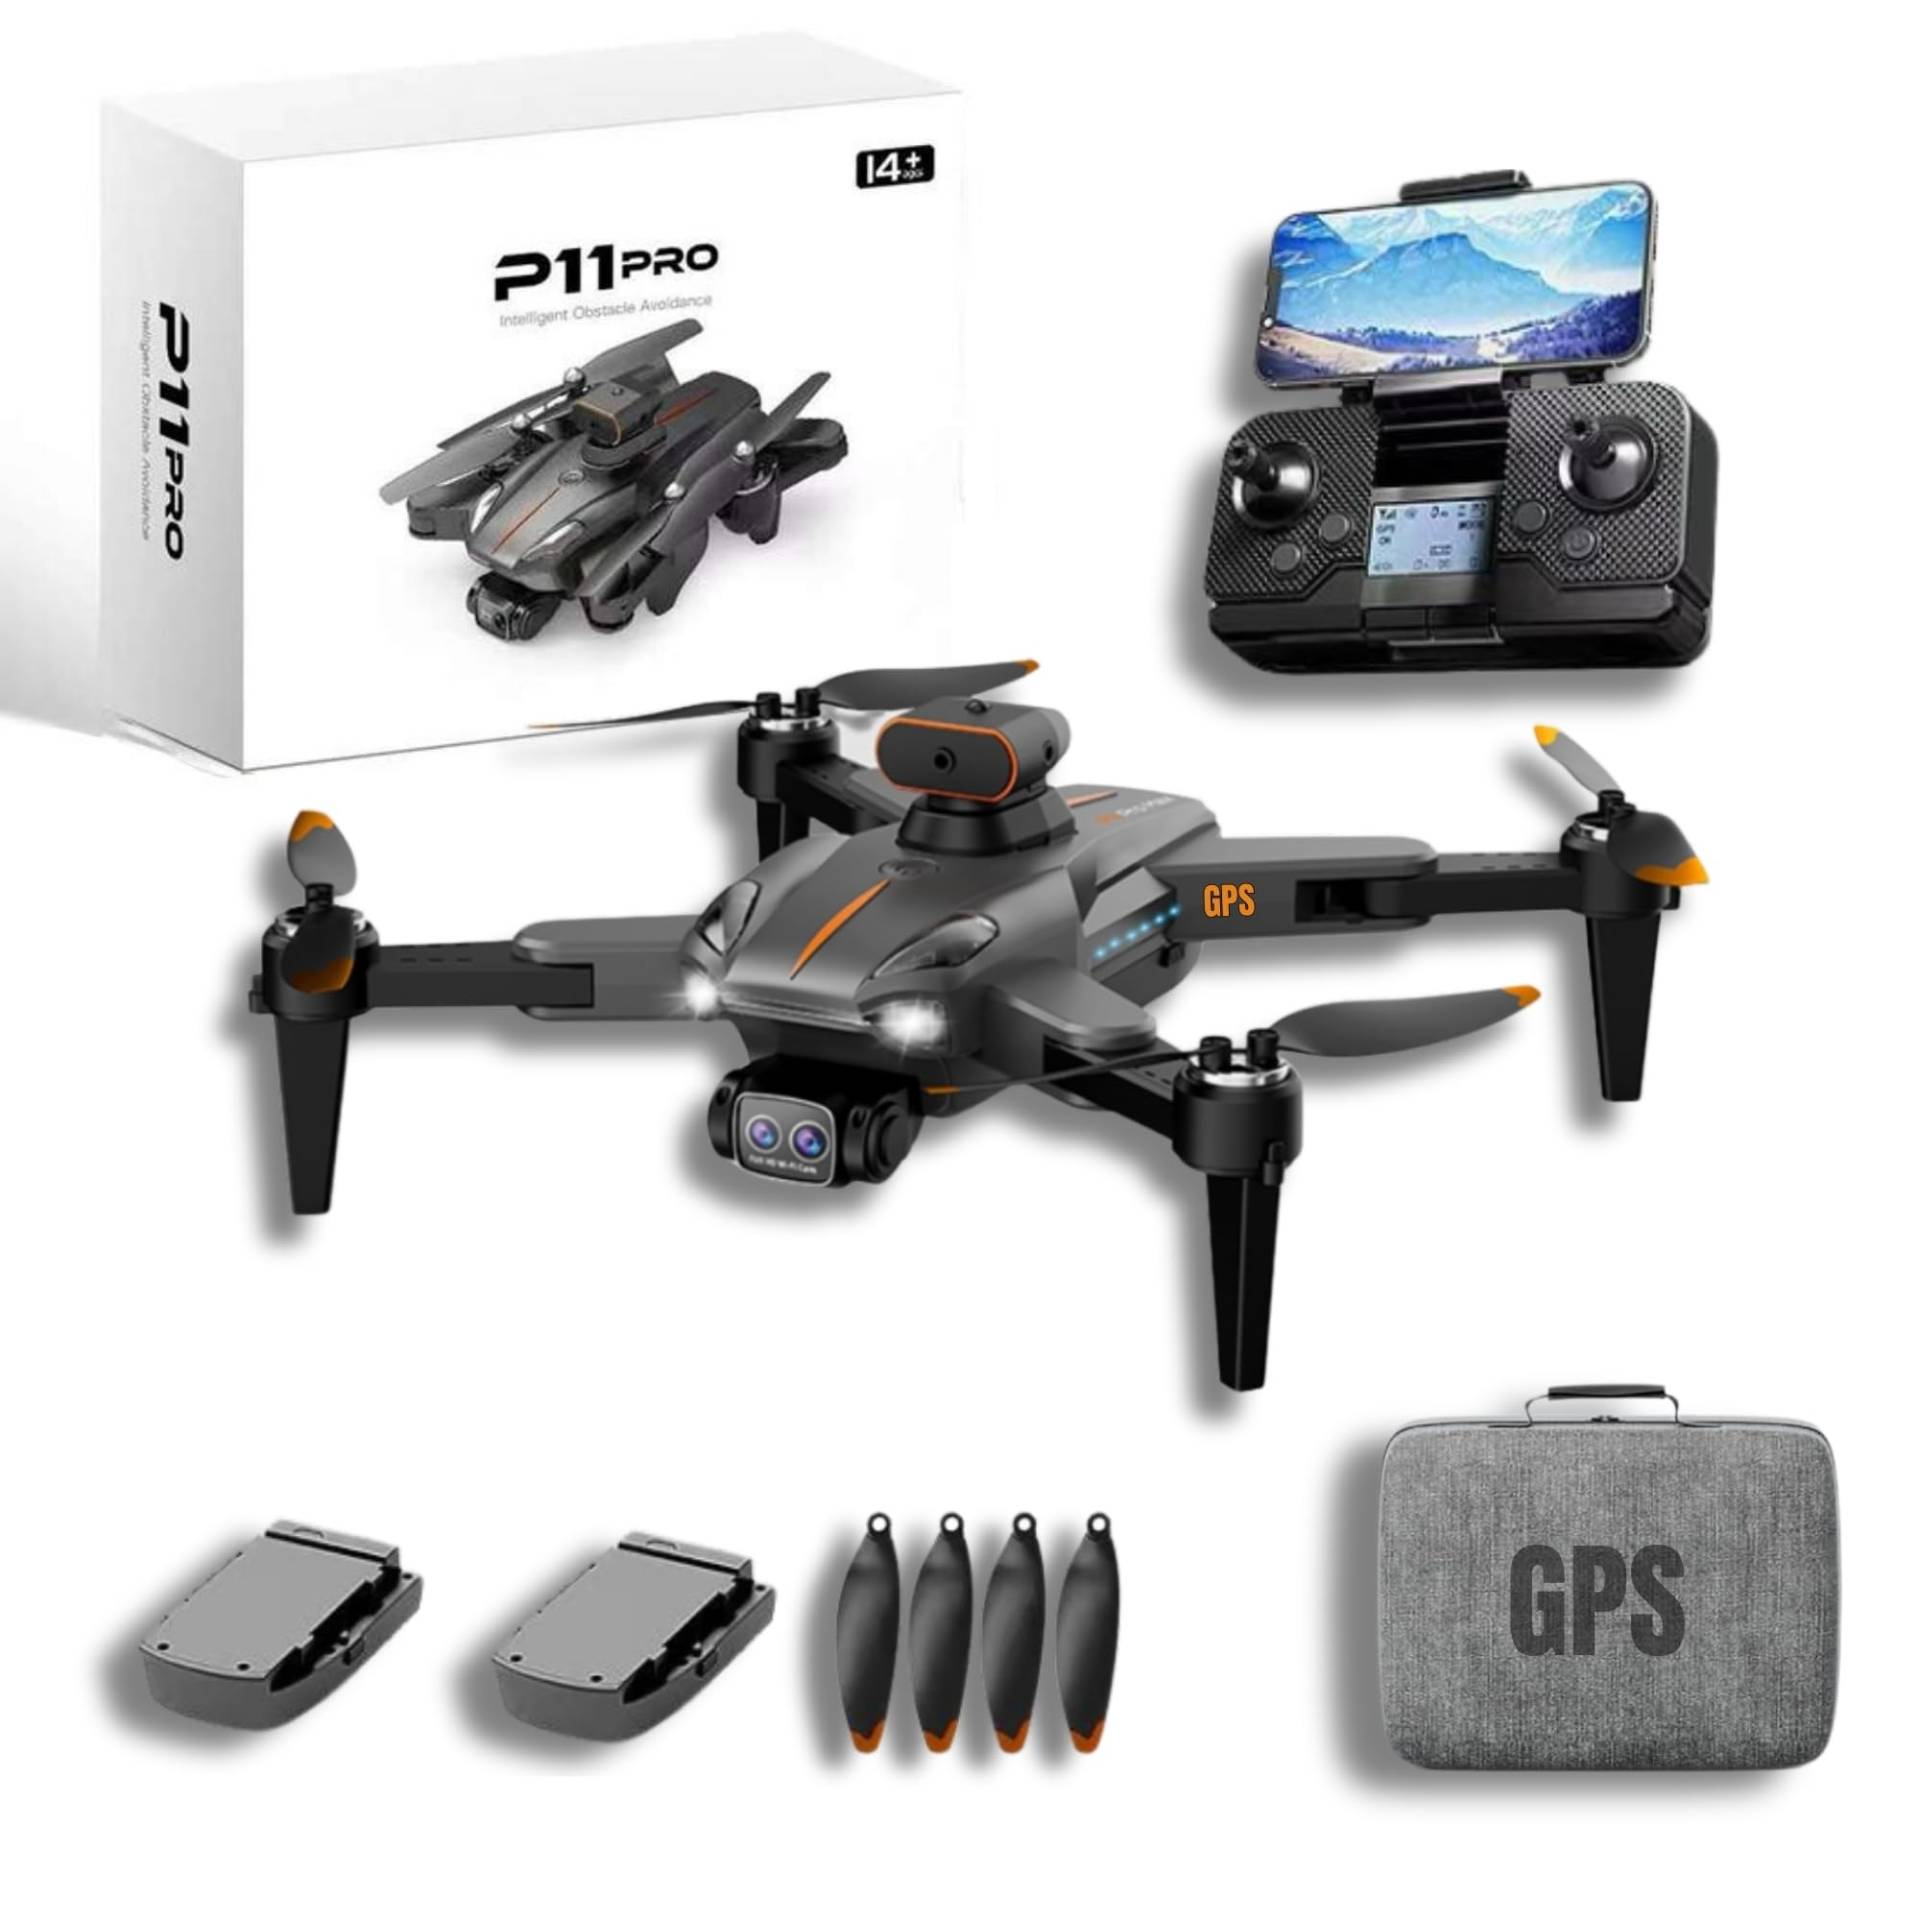 GPS Drohne P11 PRO Drone Bürstenlose Motoren 2 Kameras 1080p Reichweite 500m 2 Batterien Antihindernismodus 2 Batterien 20min Flug Präzise und stabil von Astur Group